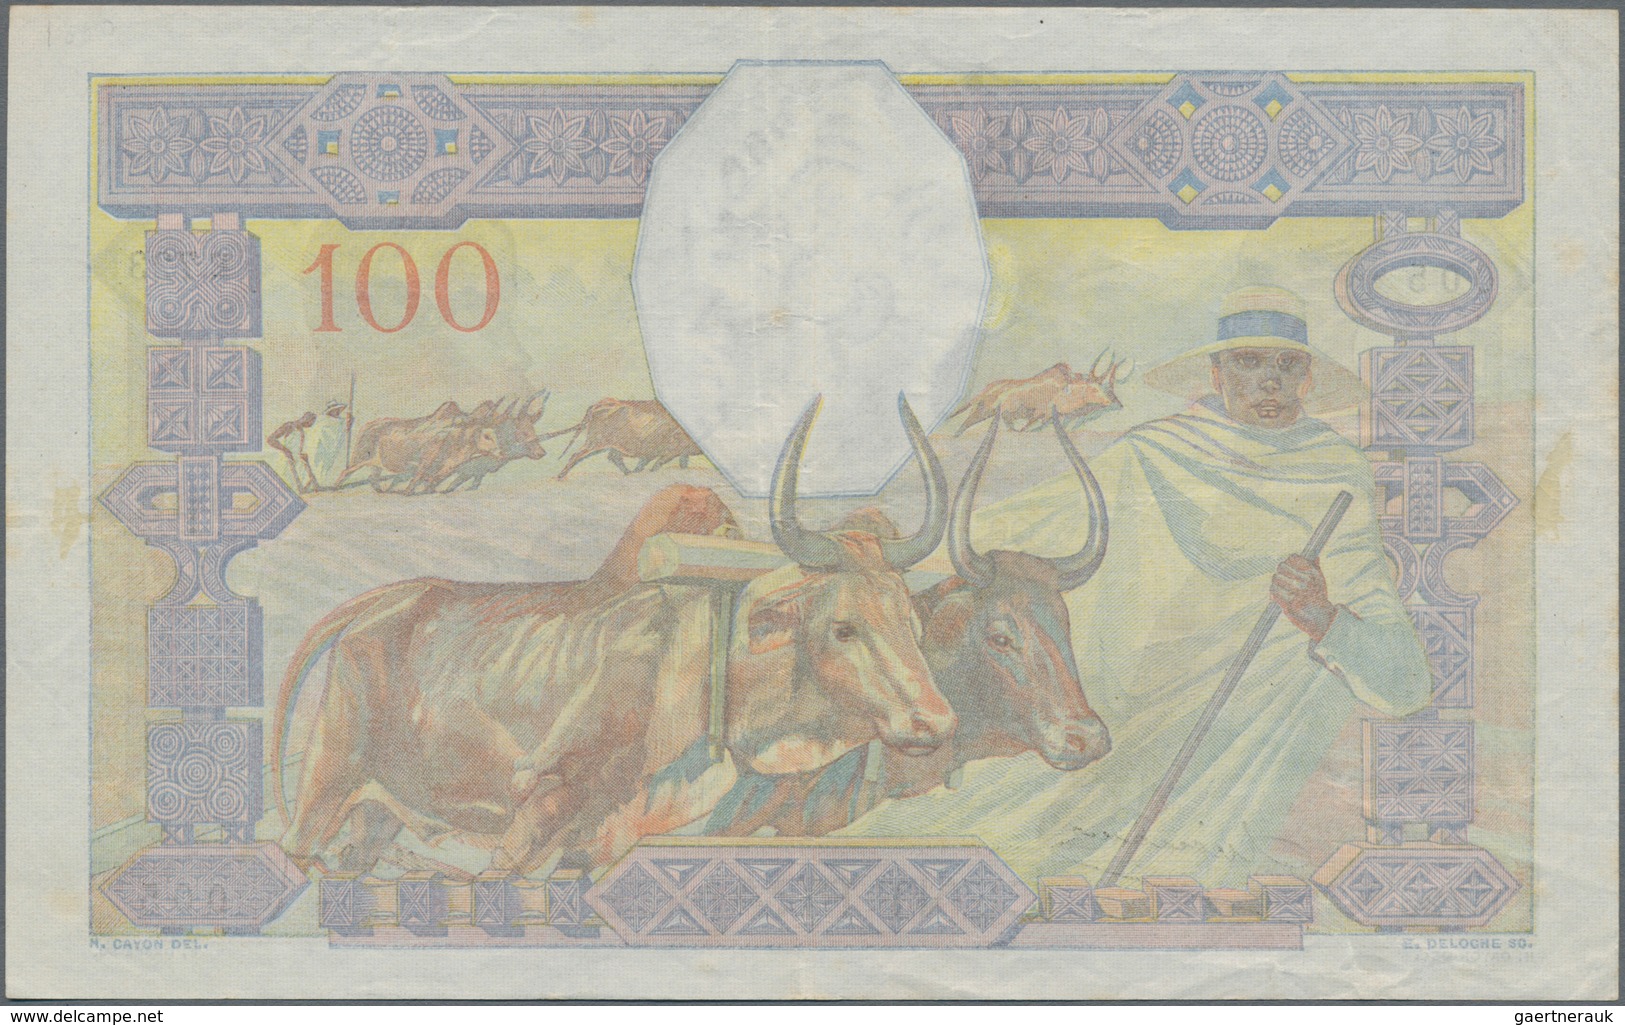 Madagascar: Banque De Madagascar 100 Francs ND(1937), P.40, Very Nice With A Few Spots And Folds. Co - Madagascar